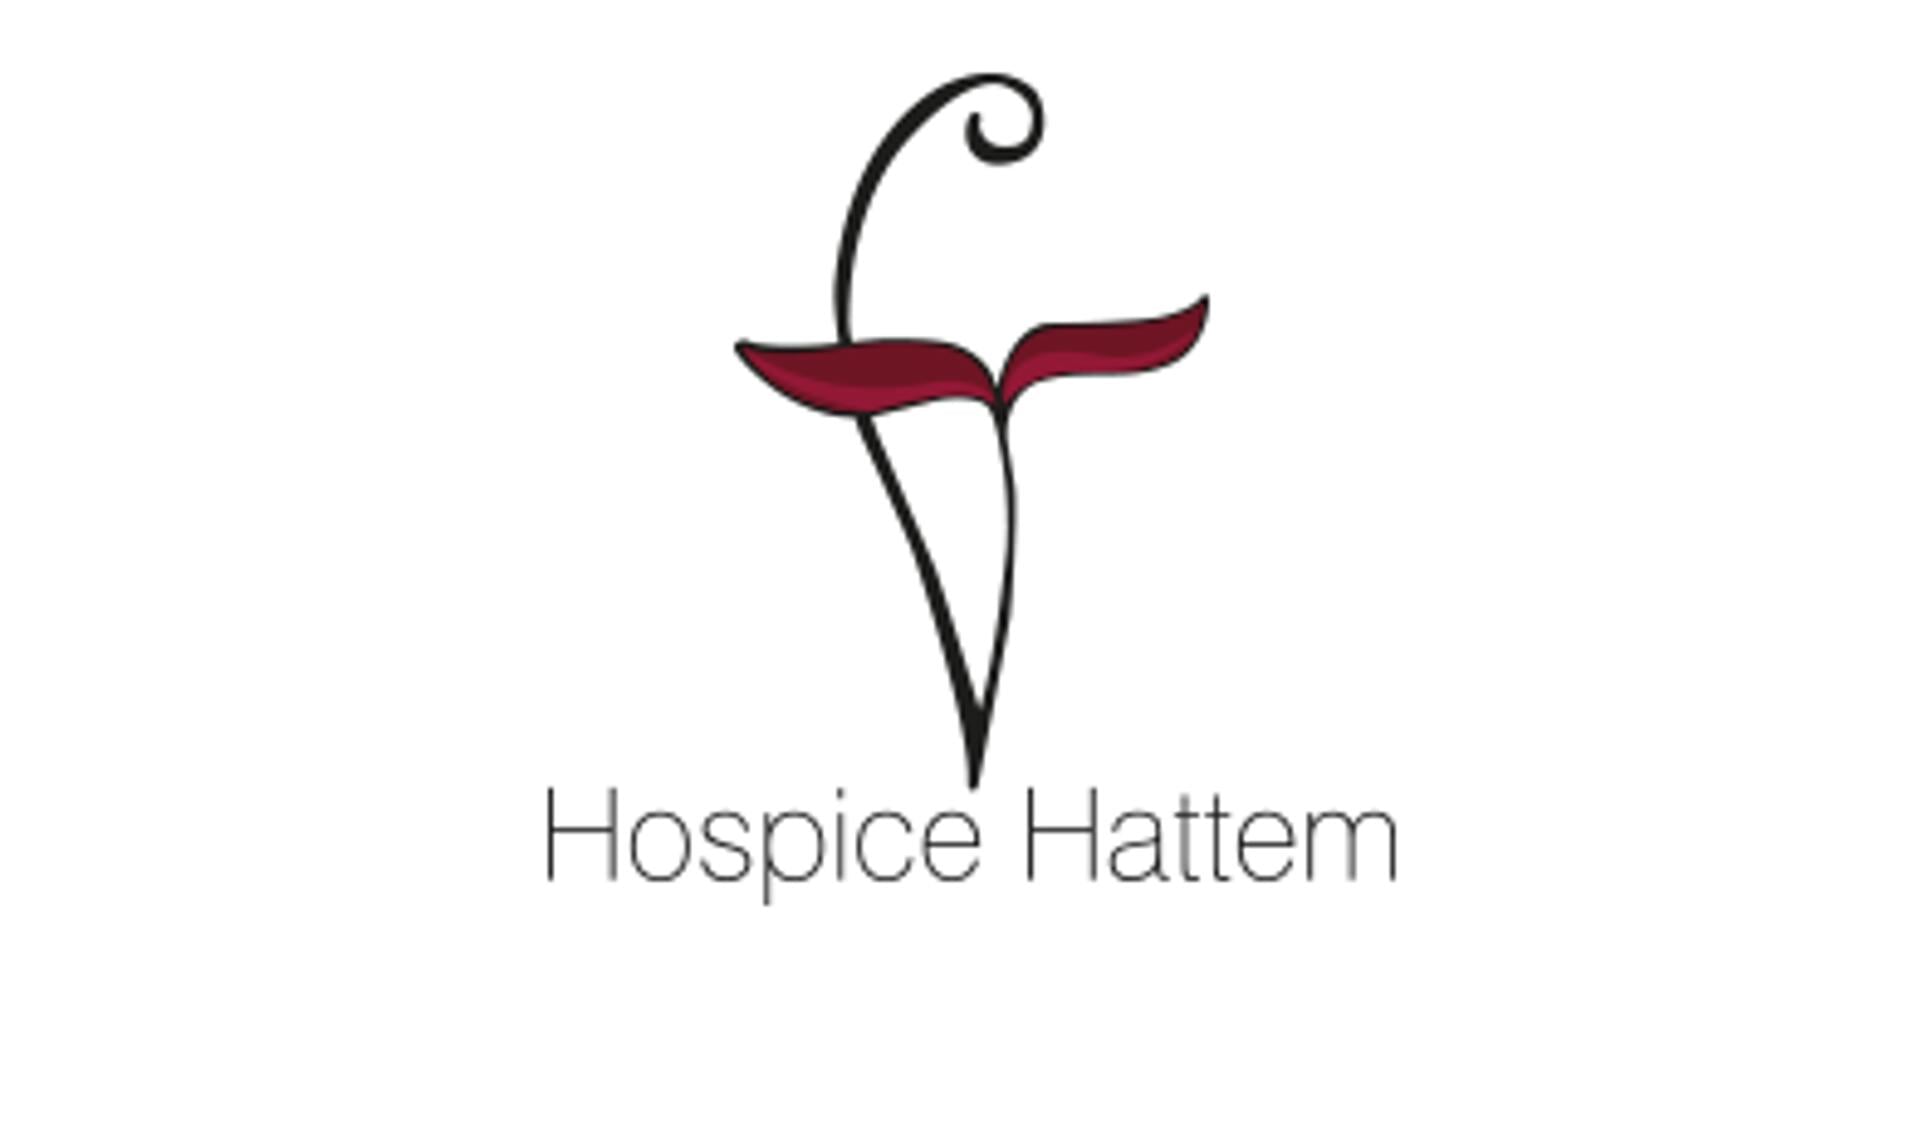 Hospice Hattem is van grote waarde